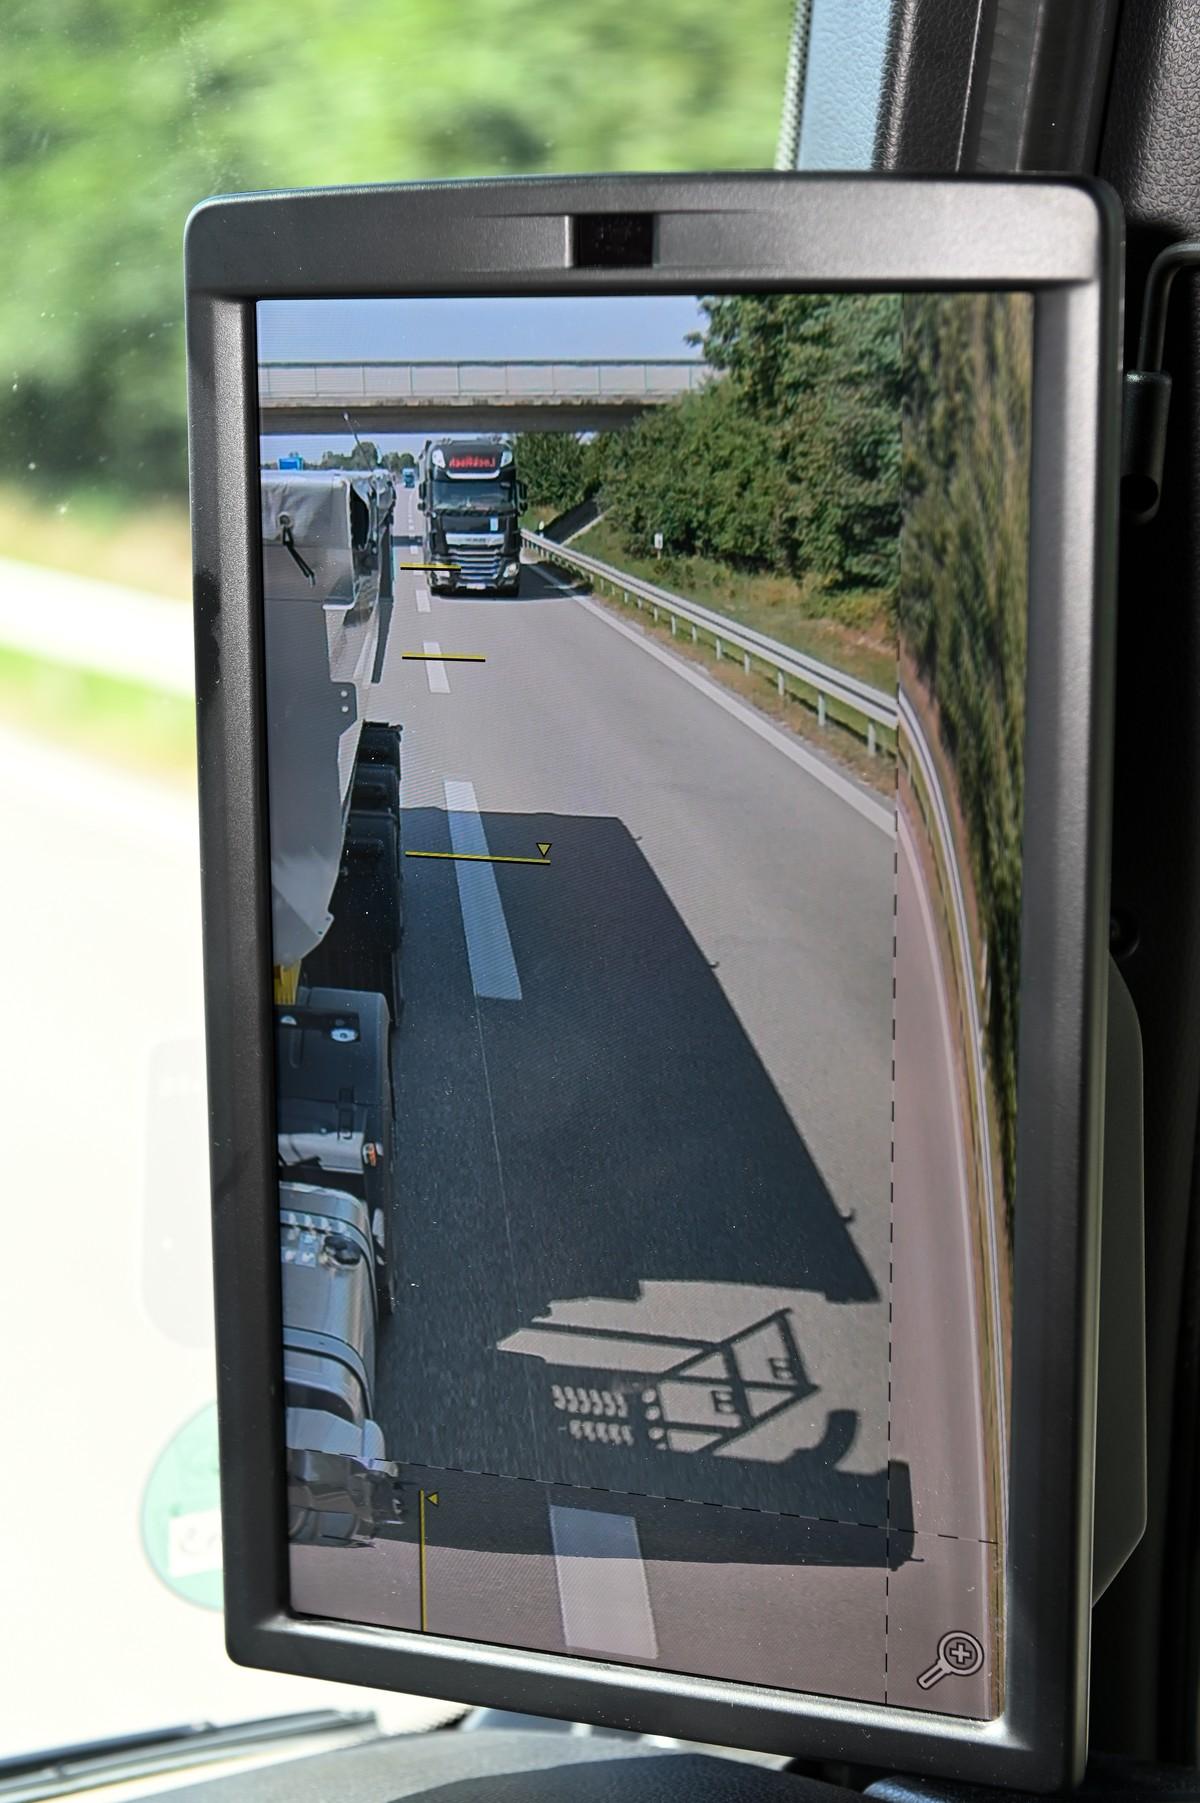 Sind die Hilfslinien im Display korrekt eingestellt, lassen sich die Abstände zum übrigen Verkehr besser einschätzen. | Foto: QUATEX